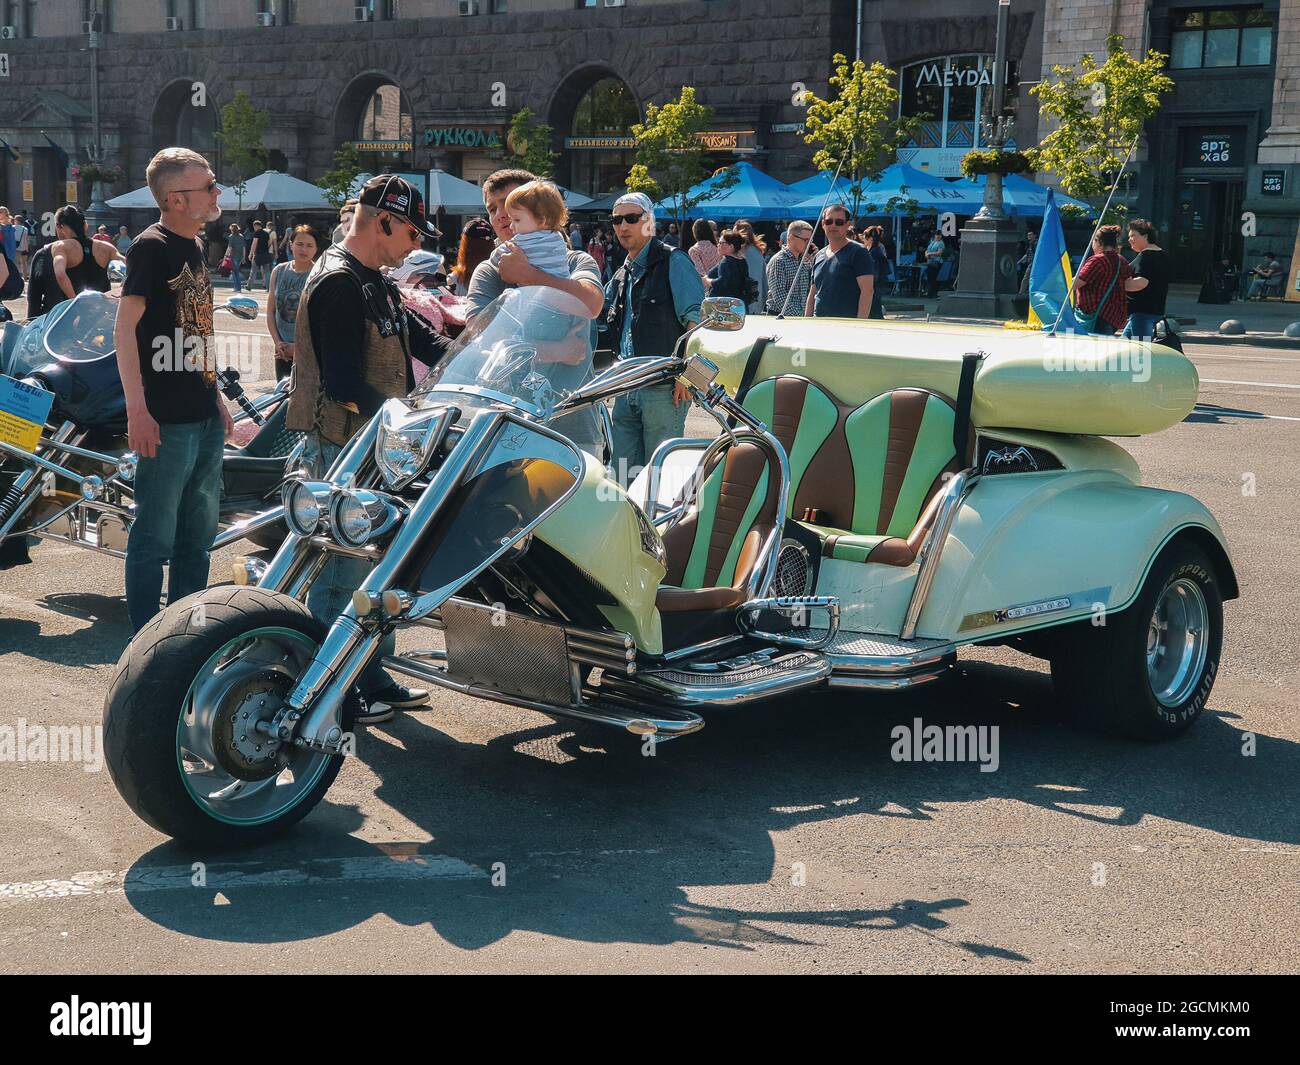 Kiew, Ukraine-29. April 2018: Gruppe von Menschen neugierig Blick auf und erleben geparkte spektakuläre Dreirad-Motorrad auf Kreschatik Straße i Stockfoto